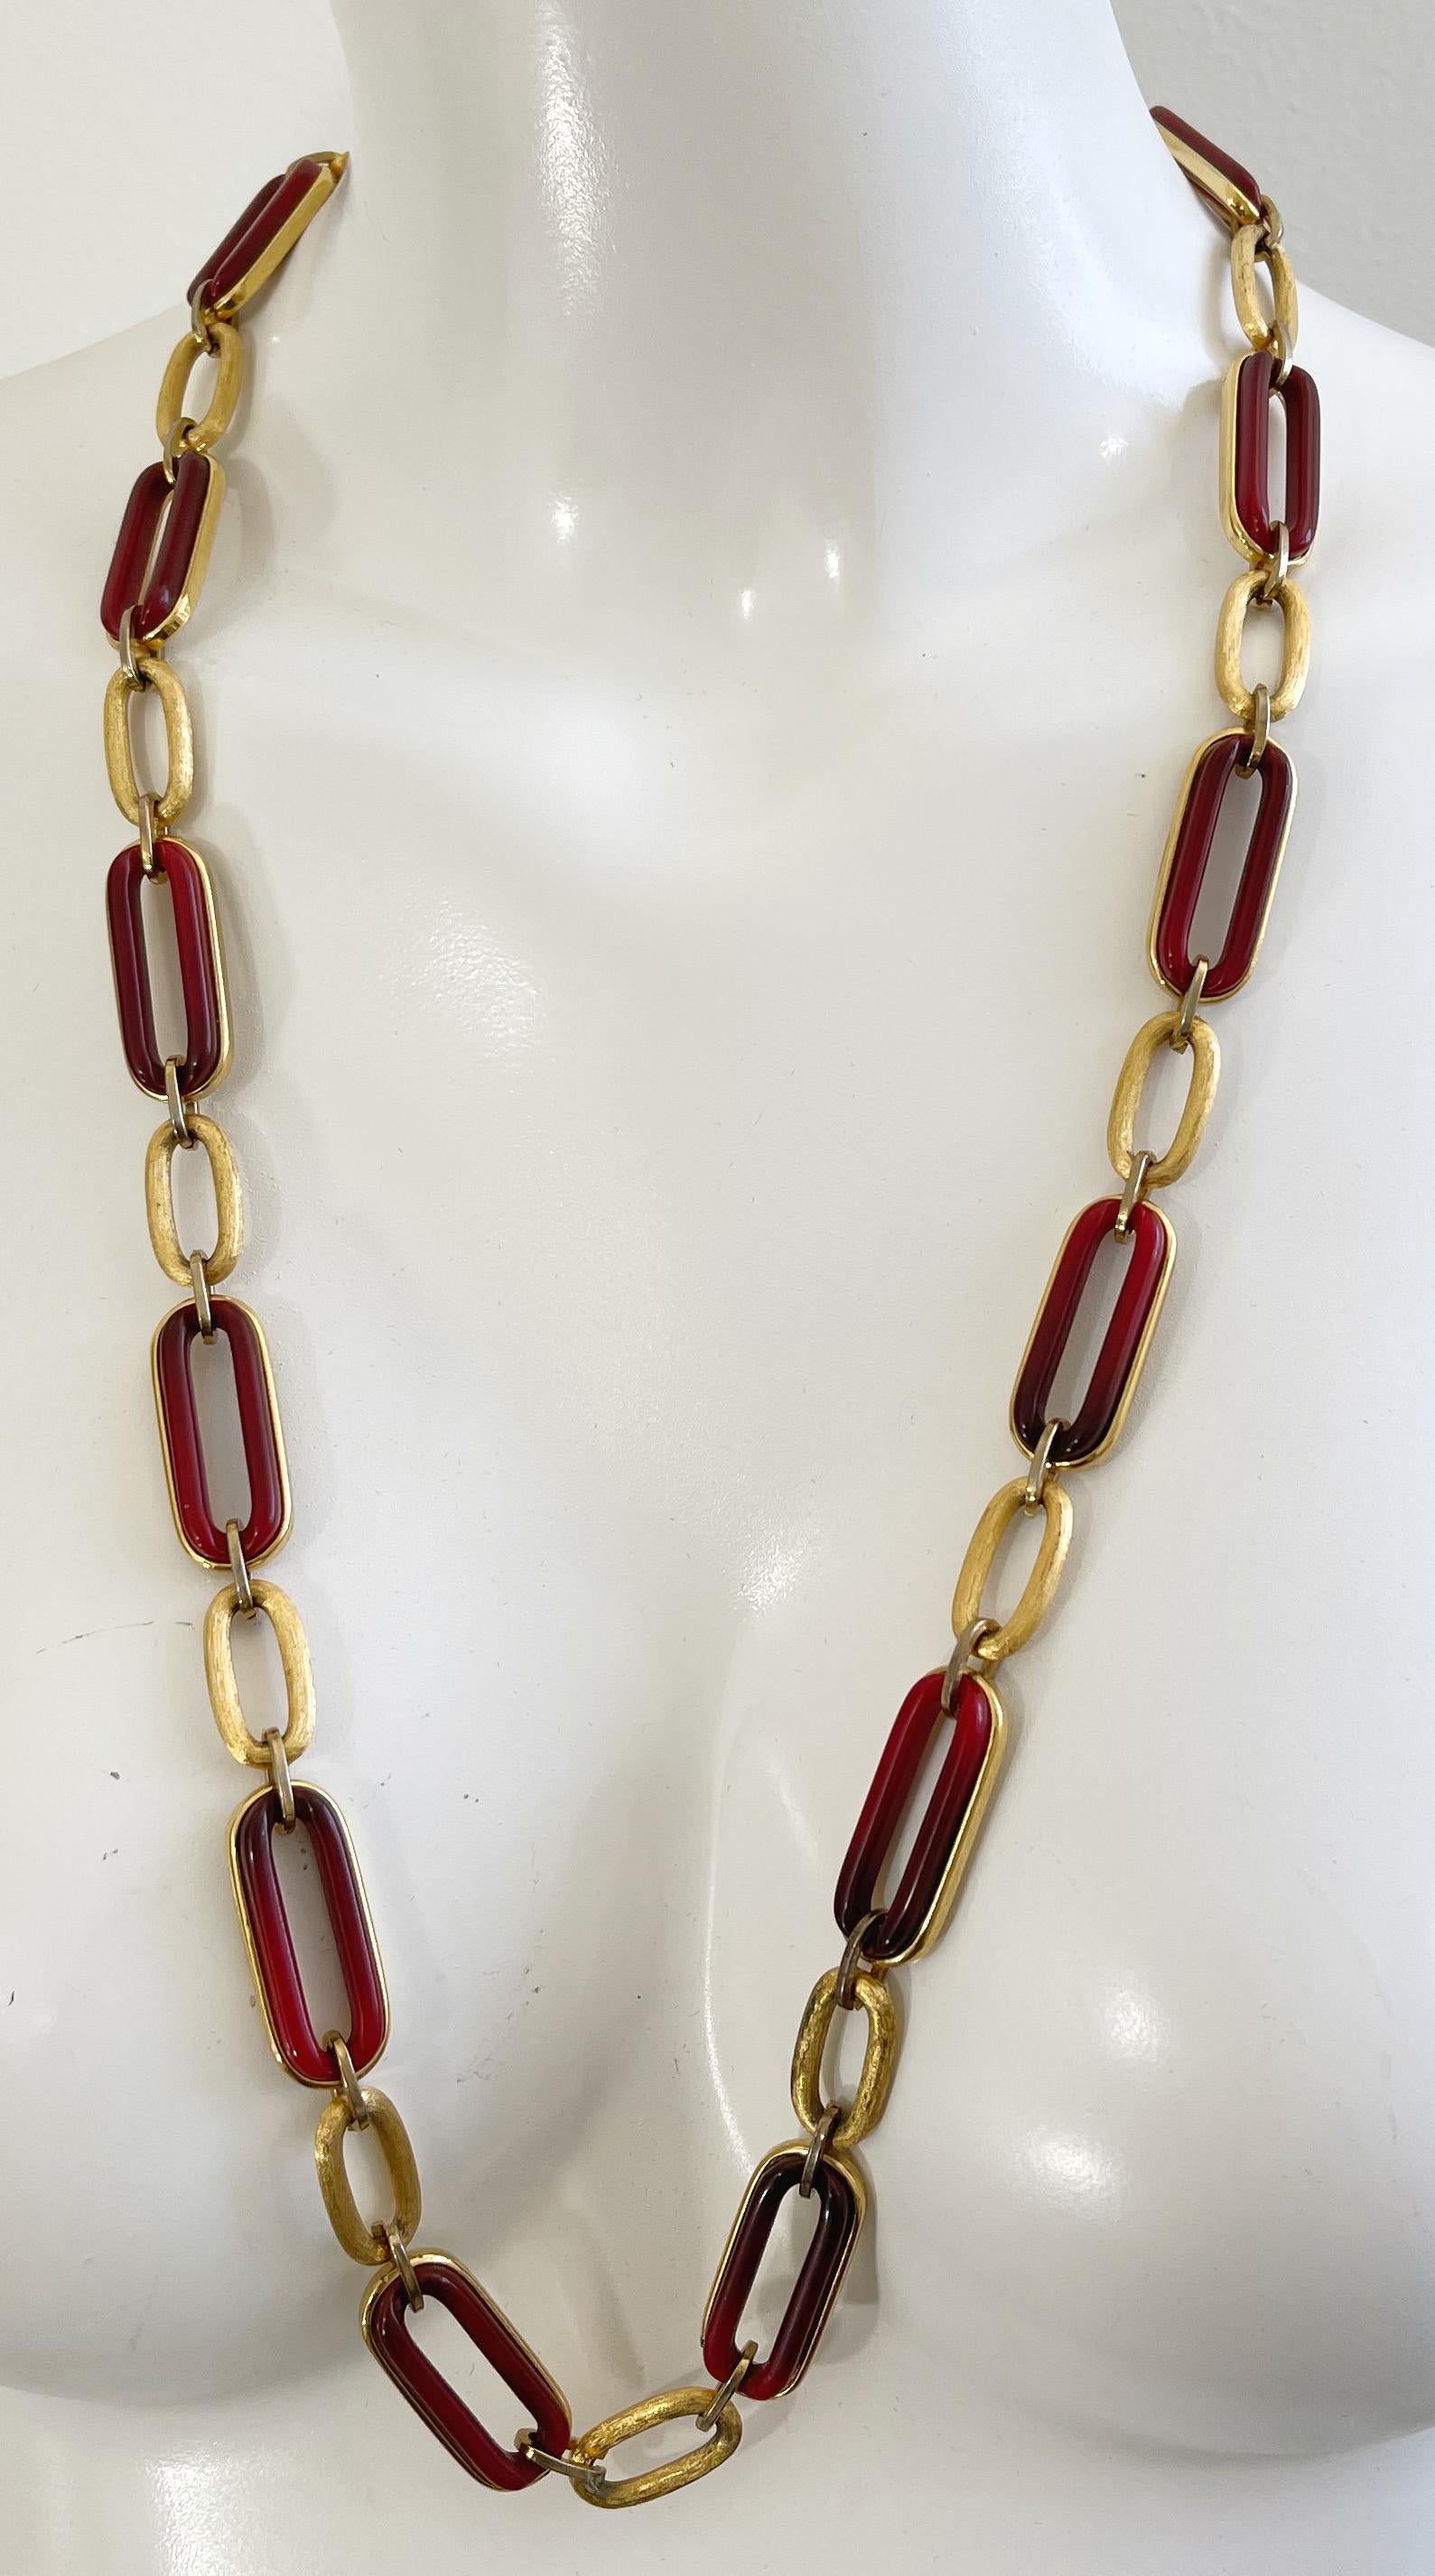 Vintage 1970 GIVENCHY amber and gold long chain necklace or belt ! Fermeture par le fermoir GG. Il est parfait comme collier long ou enroulé autour d'un collier ras-de-cou. Peut également être porté comme ceinture. Le grand collier avec pendentif en